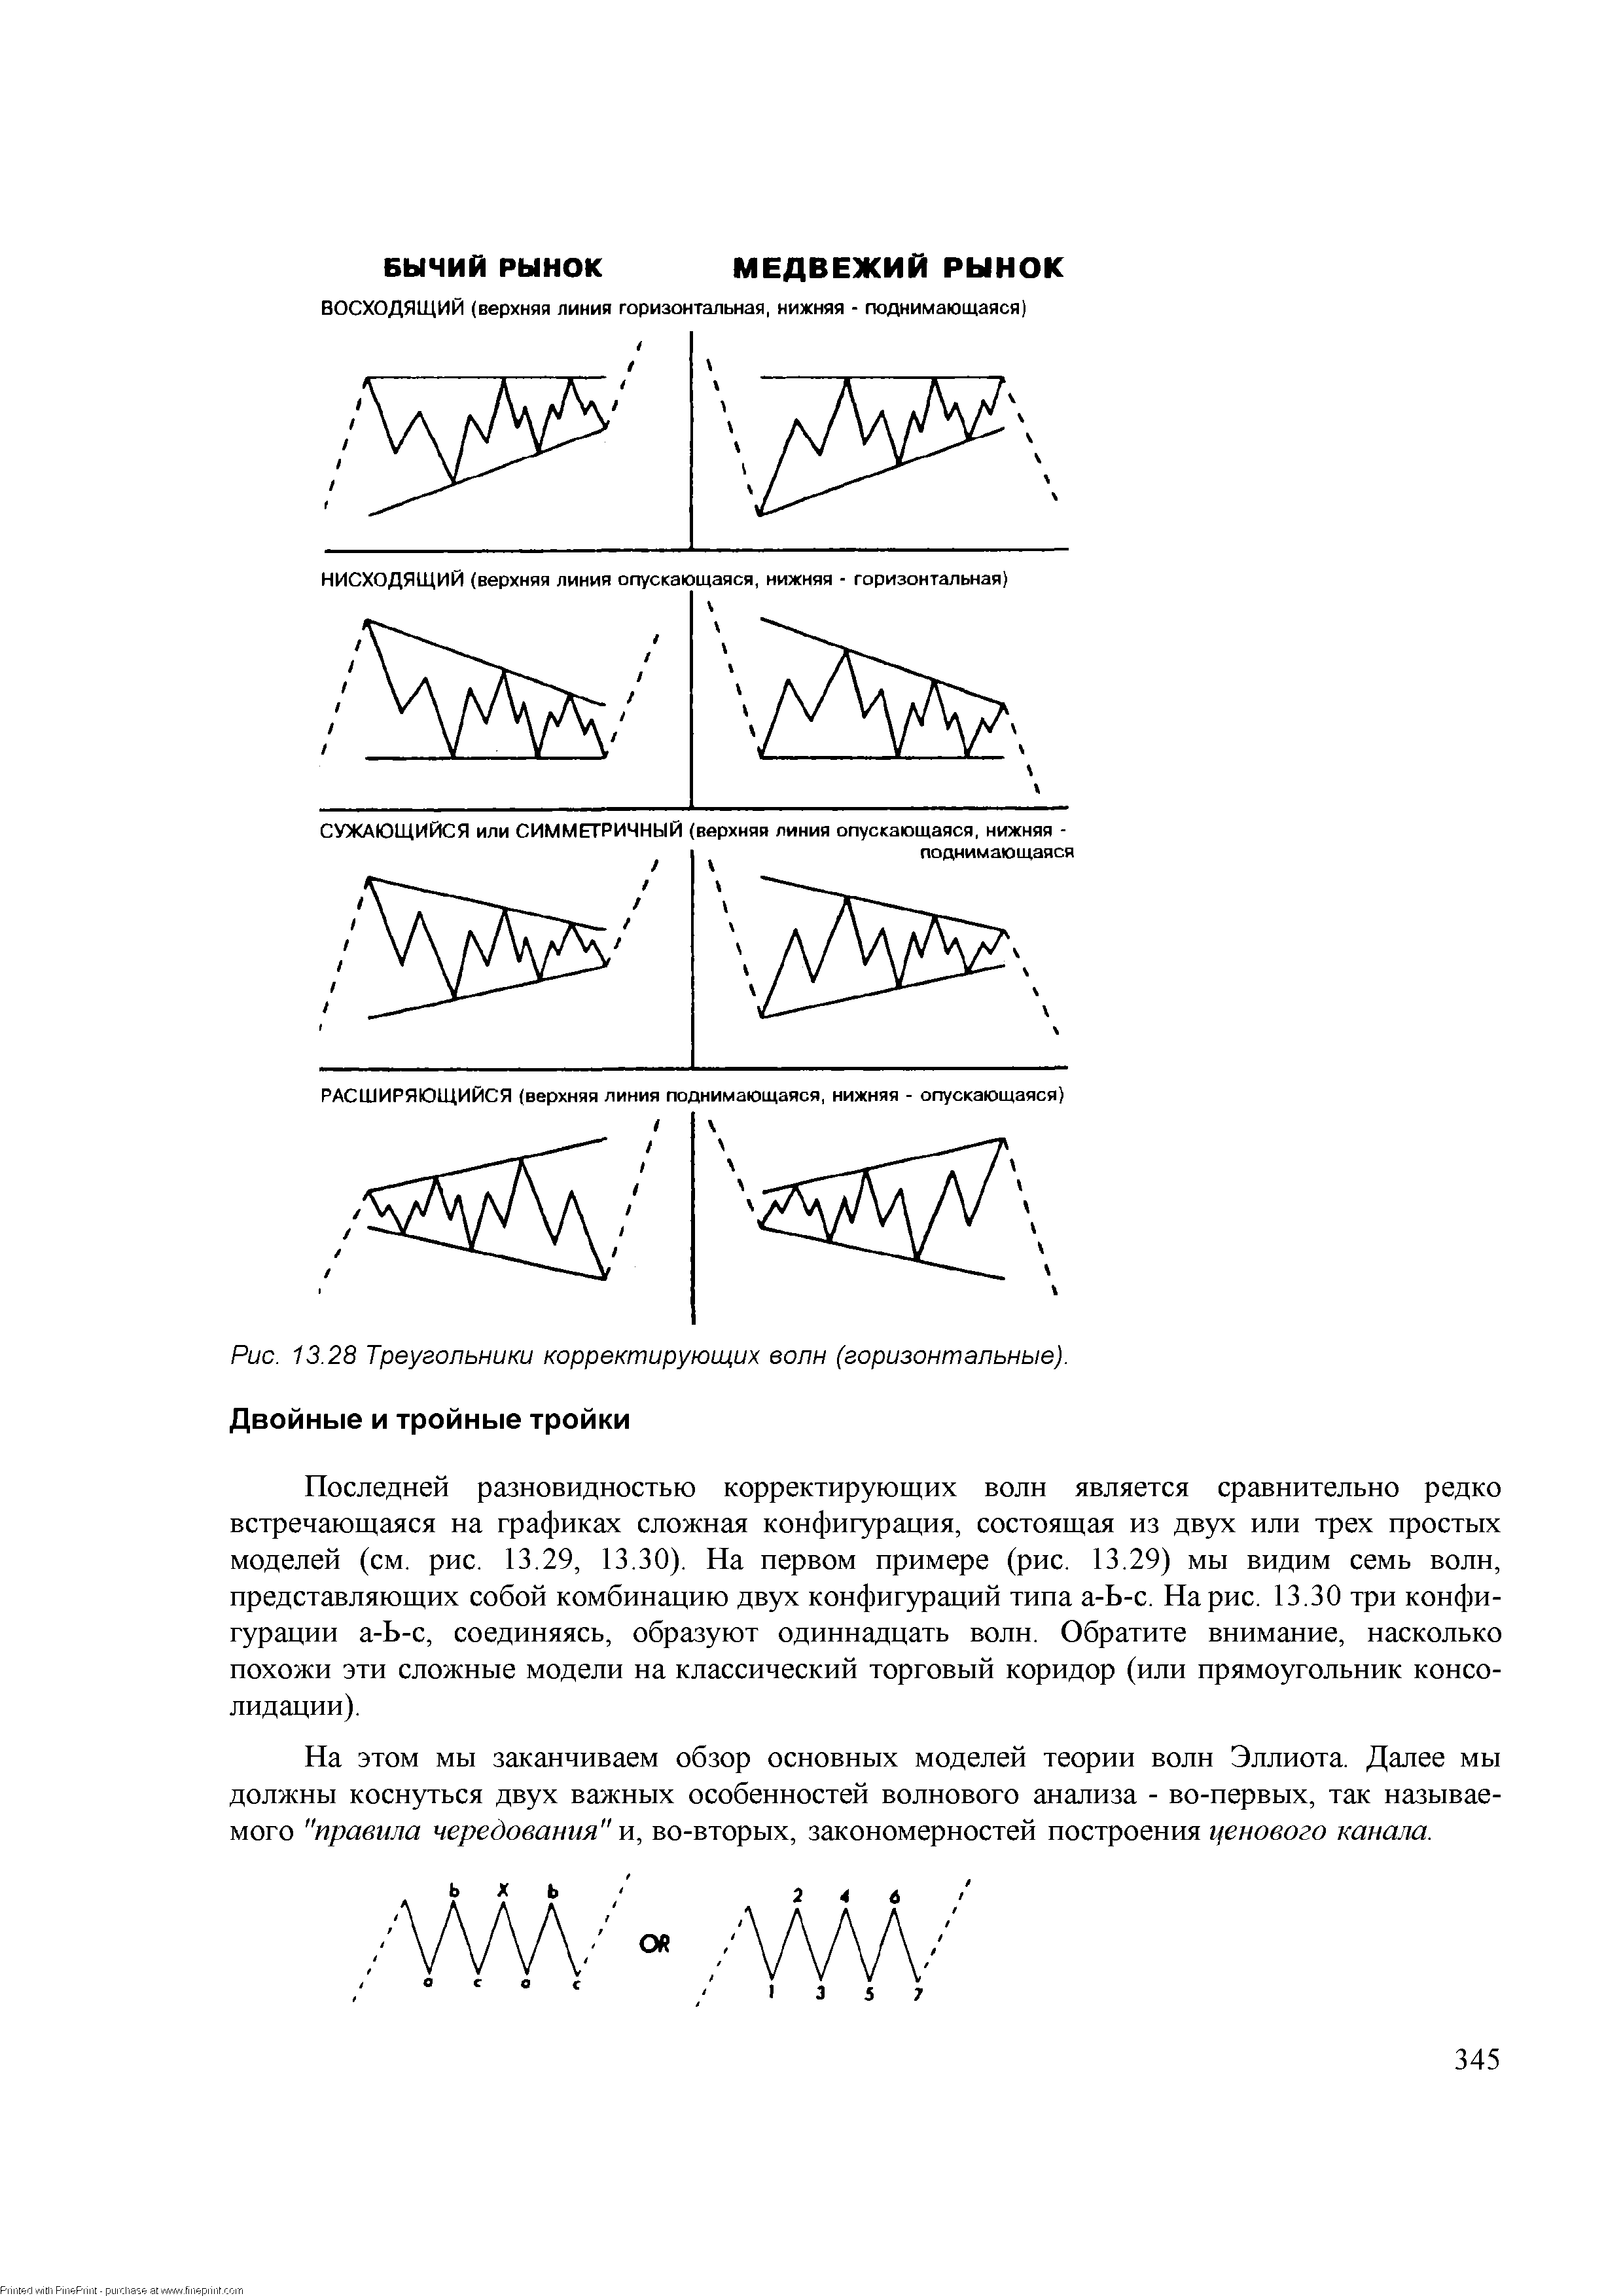 Рис. 13.28 Треугольники корректирующих волн (горизонтальные). Двойные и тройные тройки
